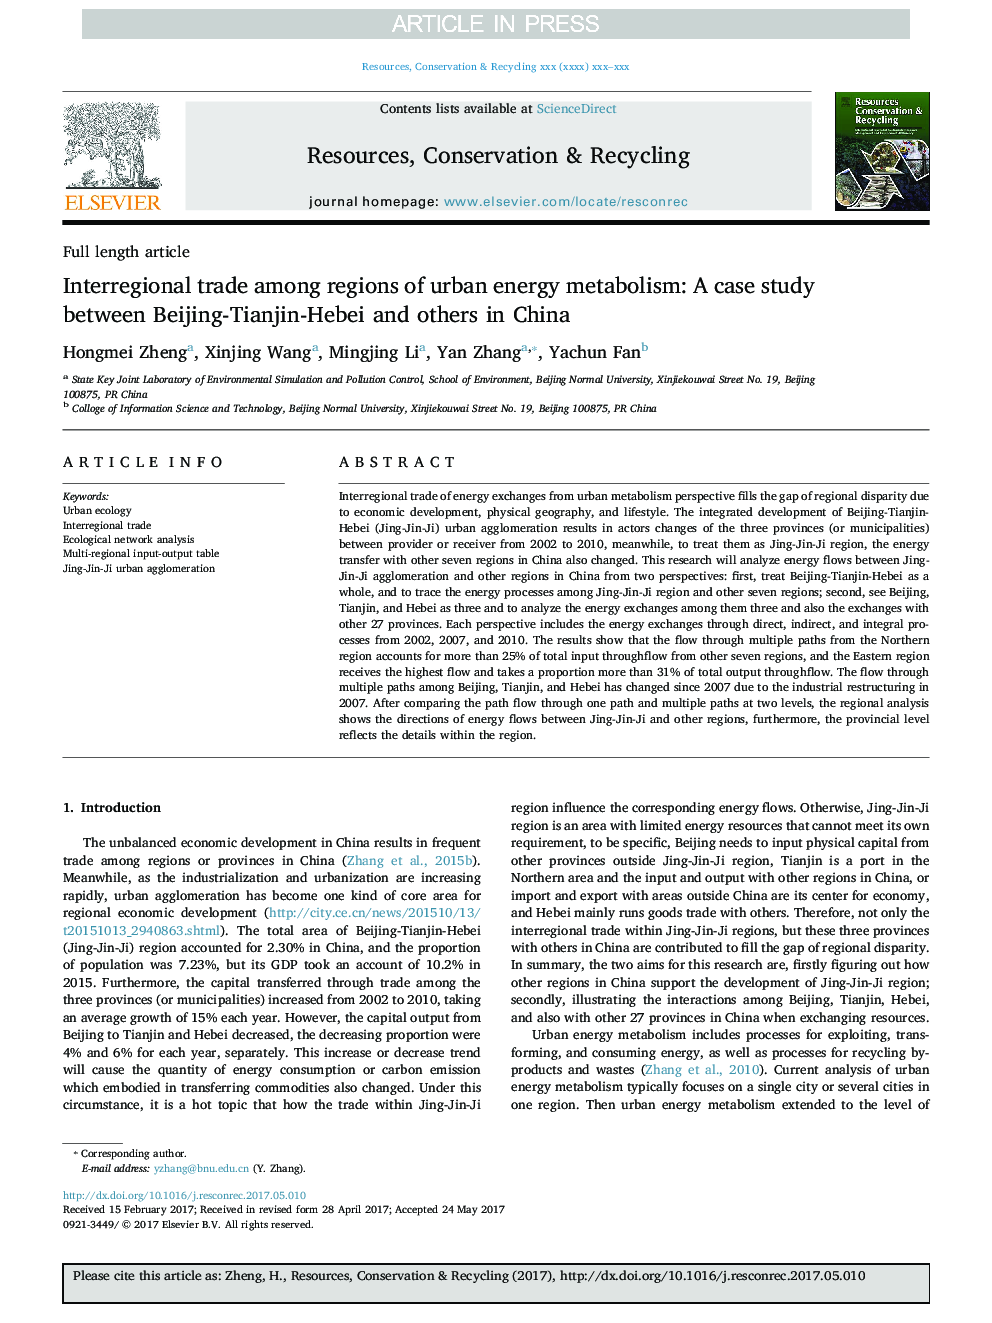 تجارت بین منطقه ای از مناطق متابولیسم انرژی شهری: یک مطالعه موردی بین پکن-تیانجین-هبی و دیگران در چین 